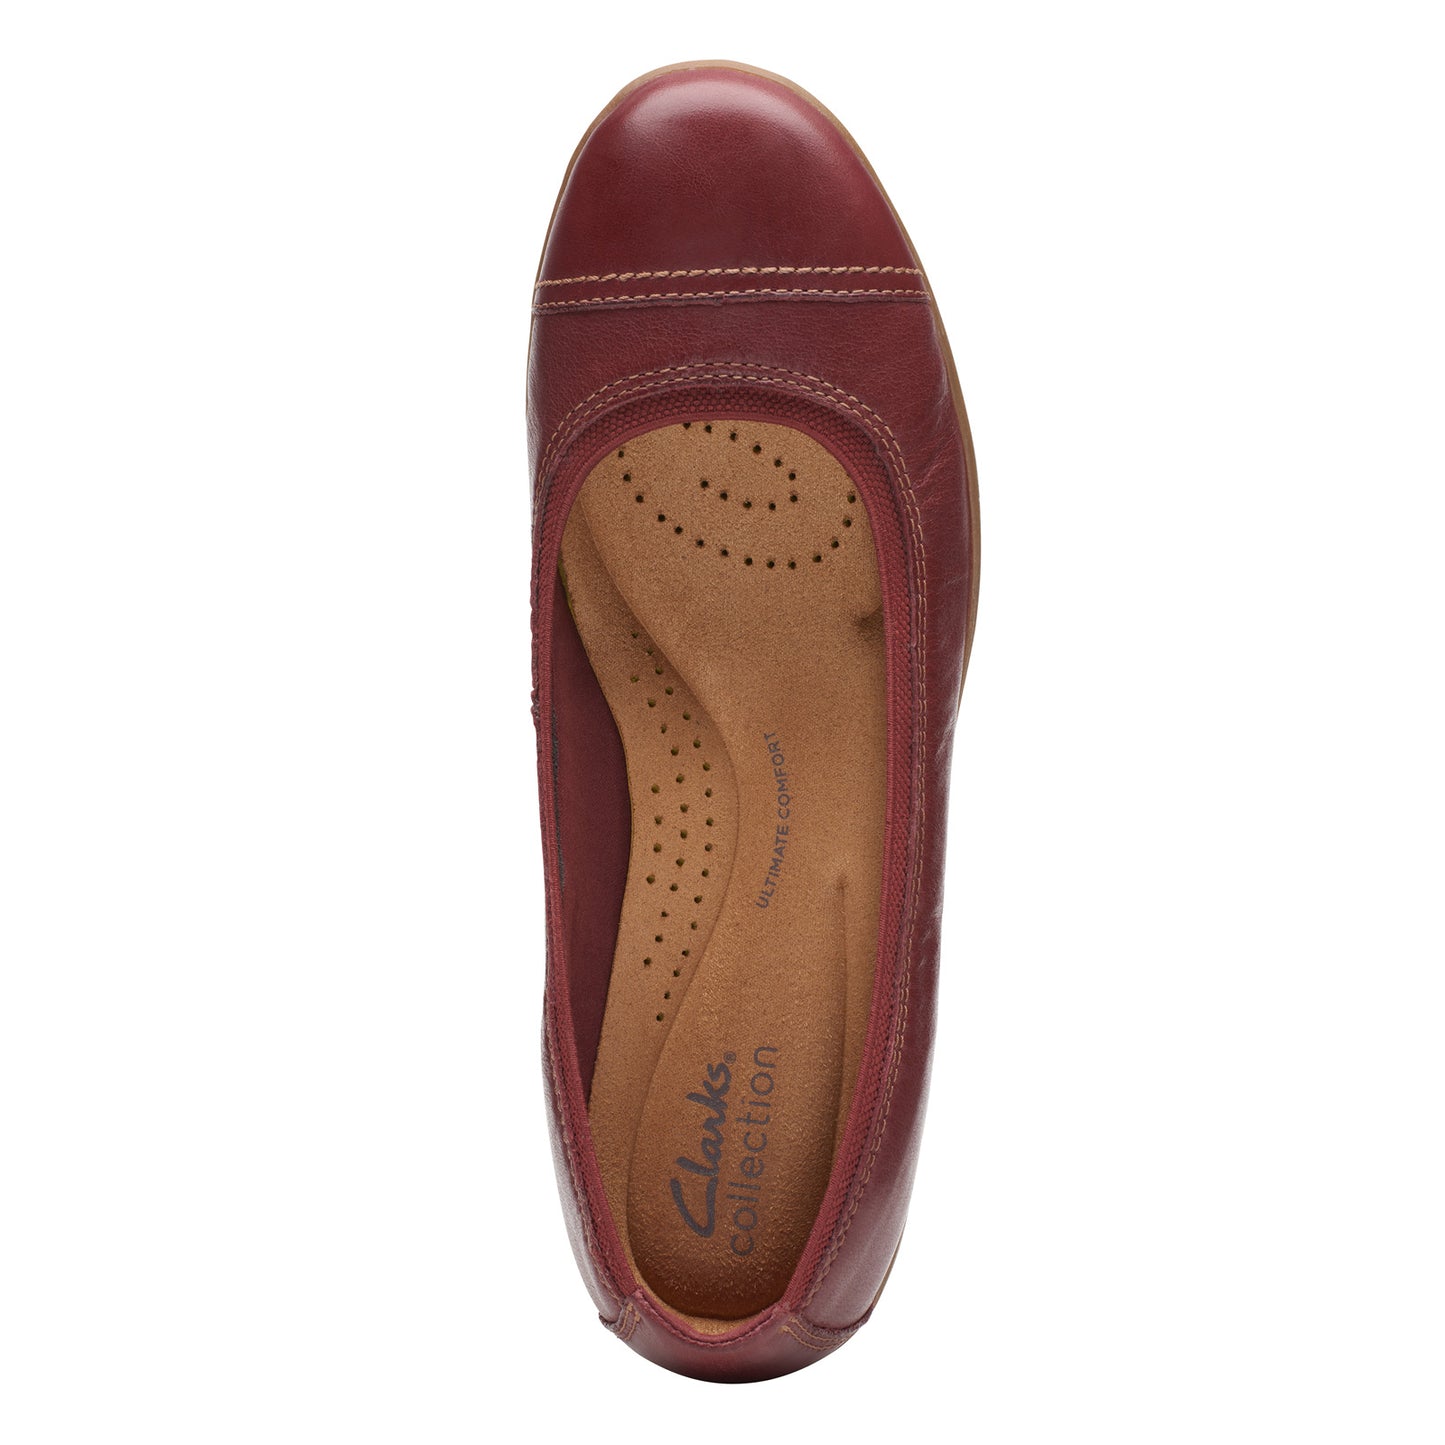 Peltz Shoes  Women's Clarks Meadow Opal Slip-On CHESTNUT 26174361